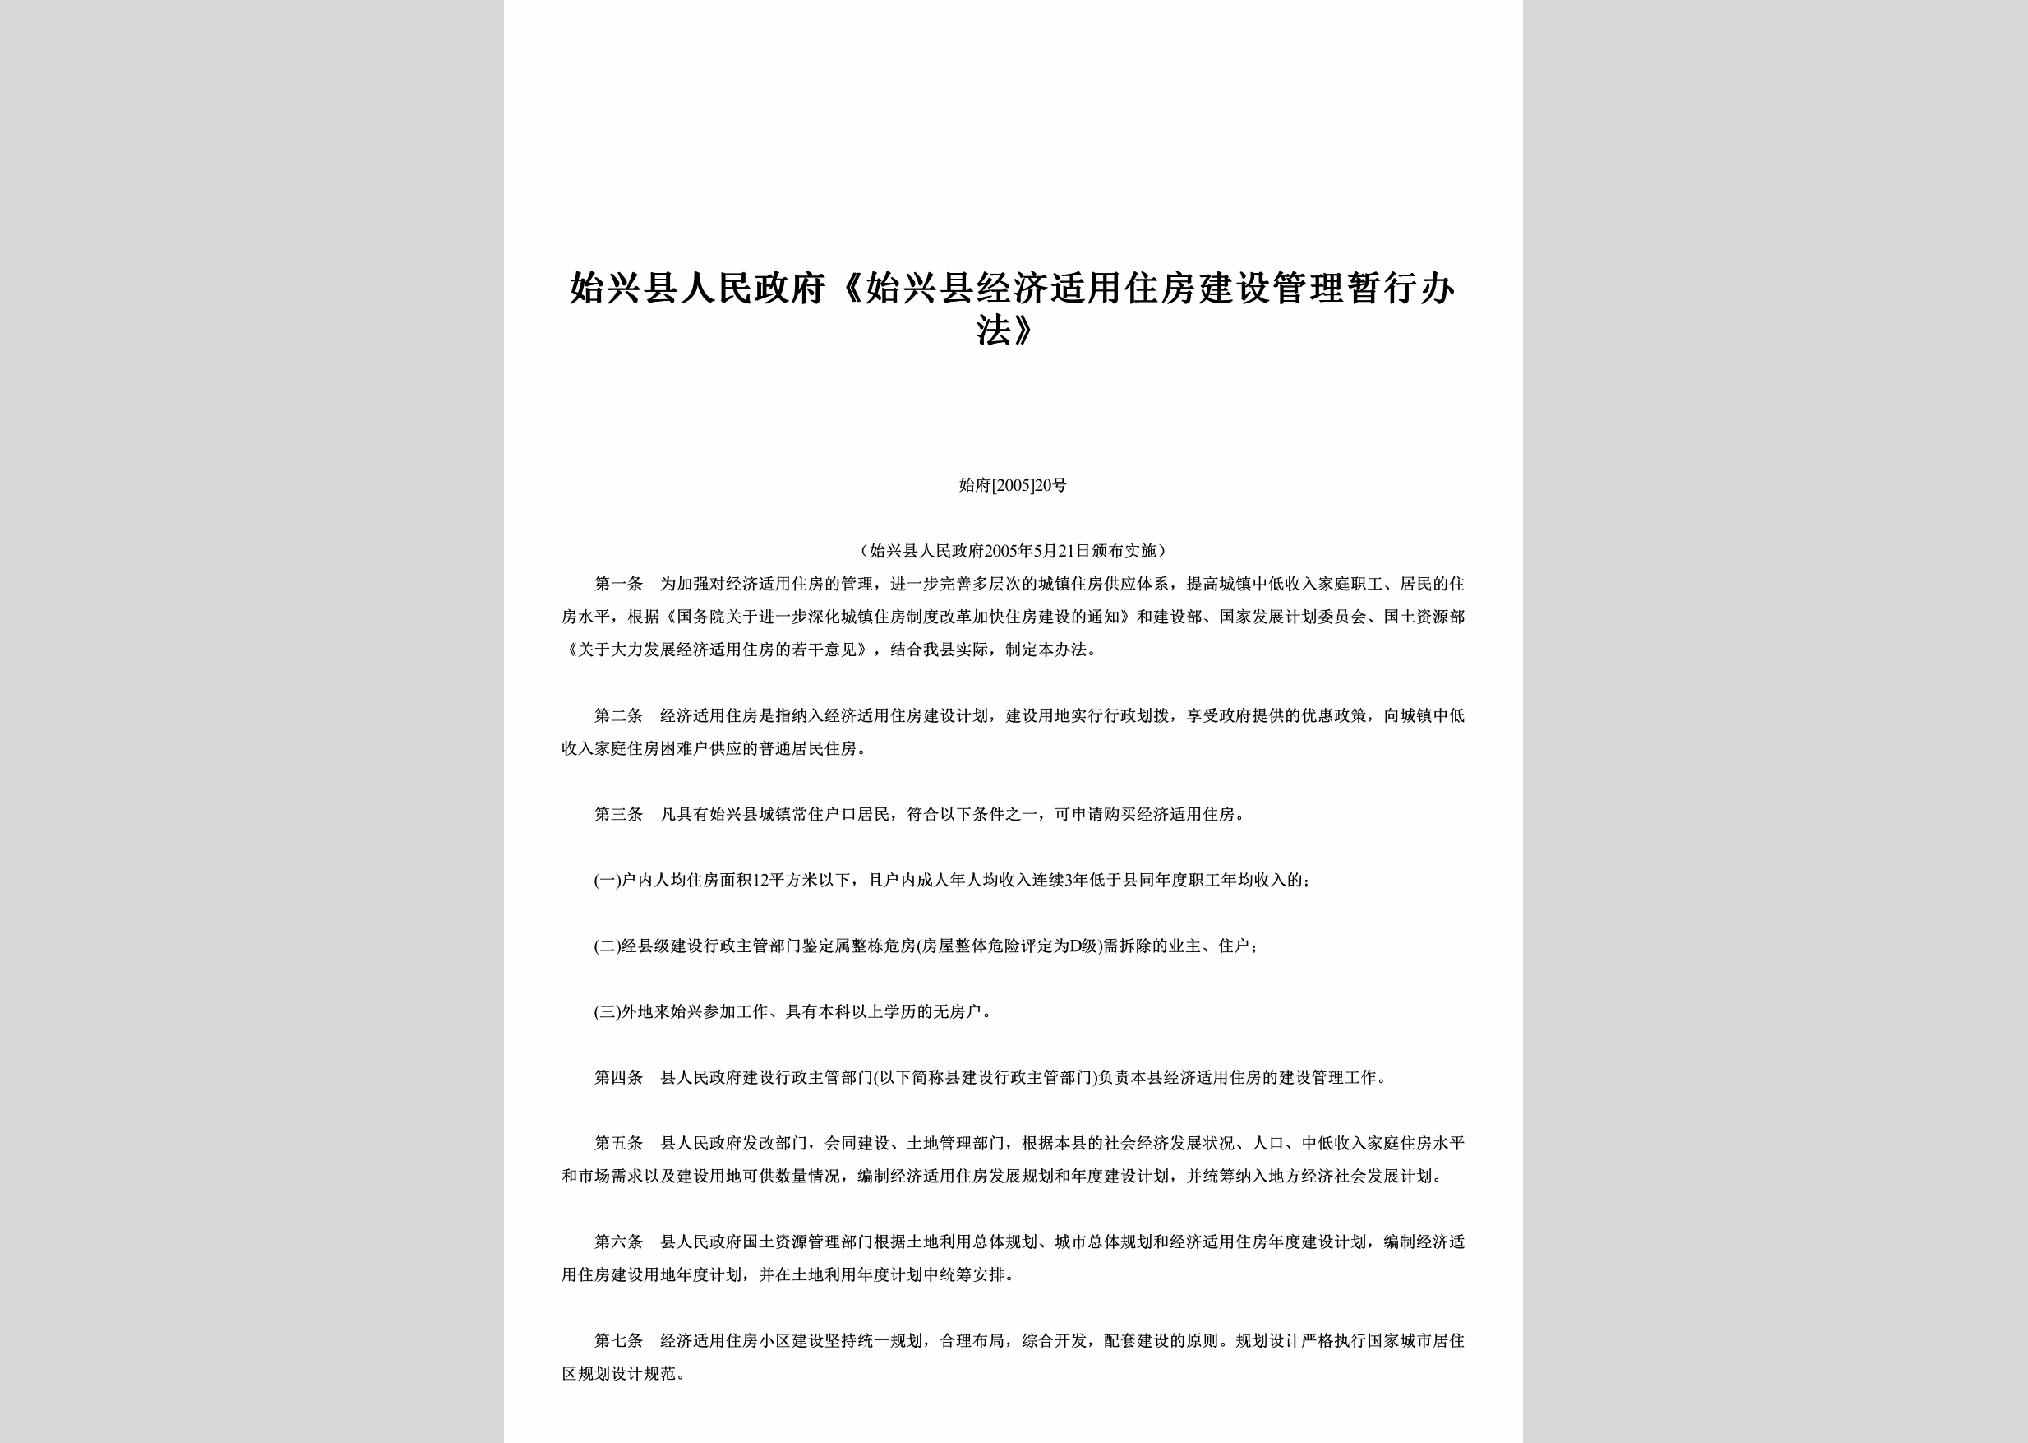 始府[2005]20号：《始兴县经济适用住房建设管理暂行办法》